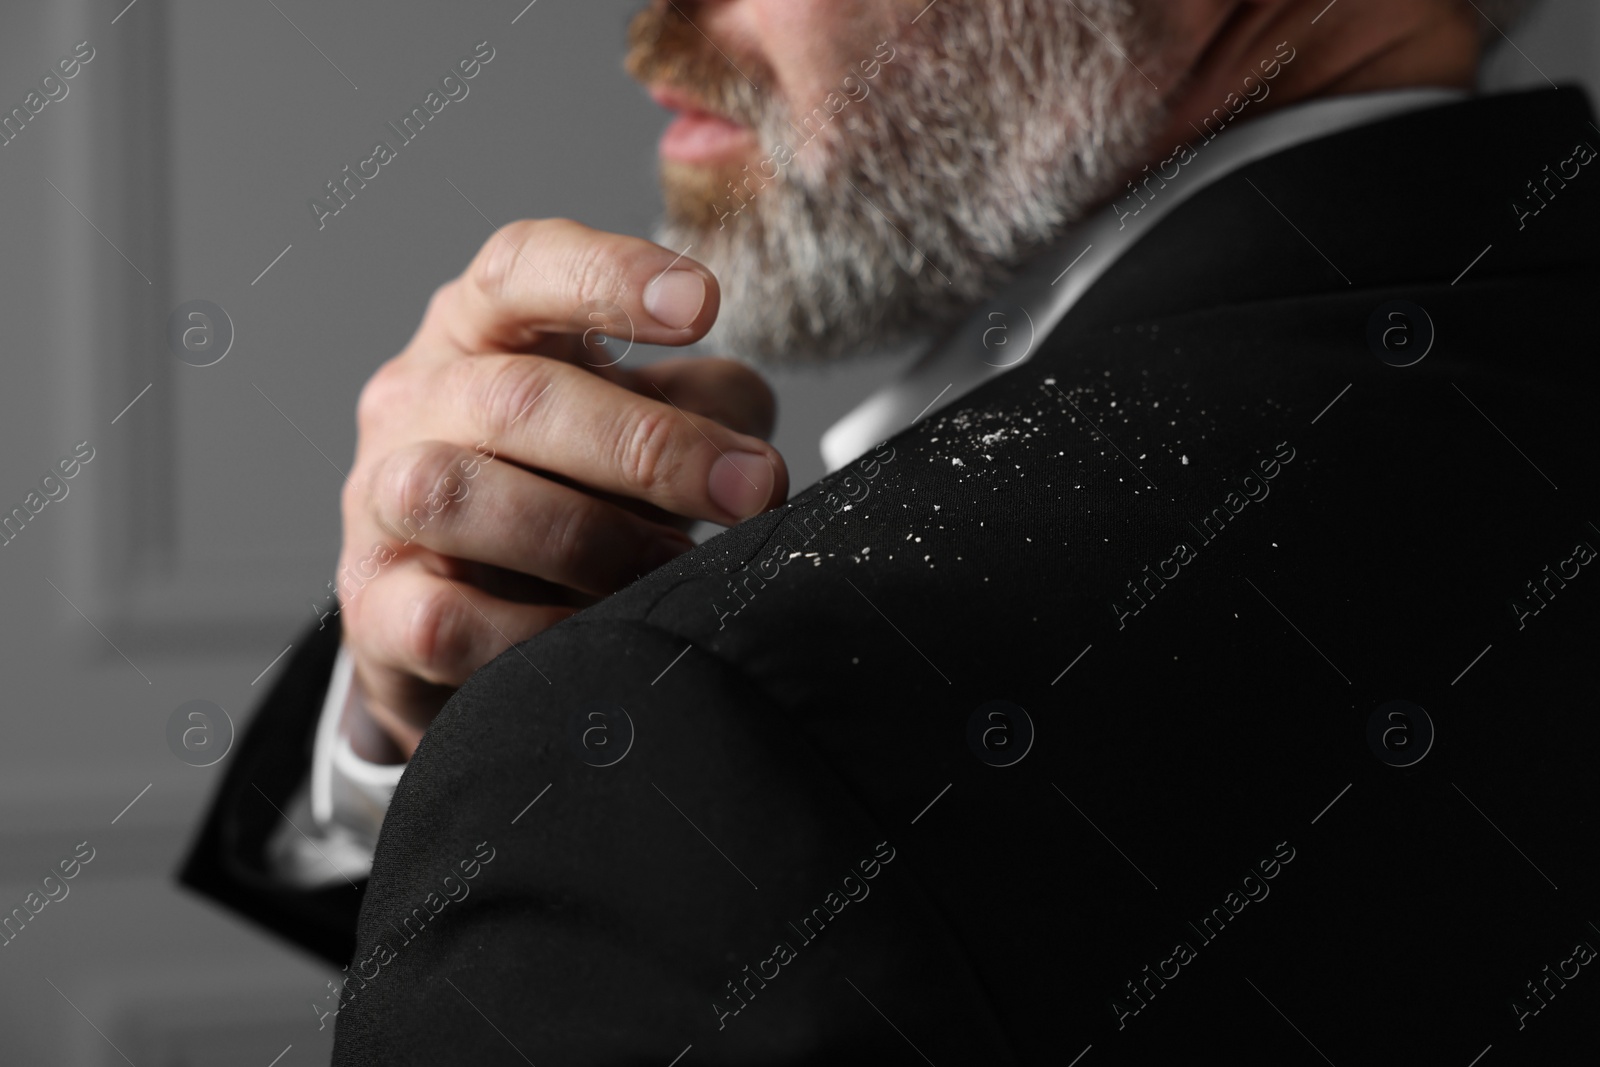 Photo of Bearded man brushing dandruff off his jacket on grey background, closeup